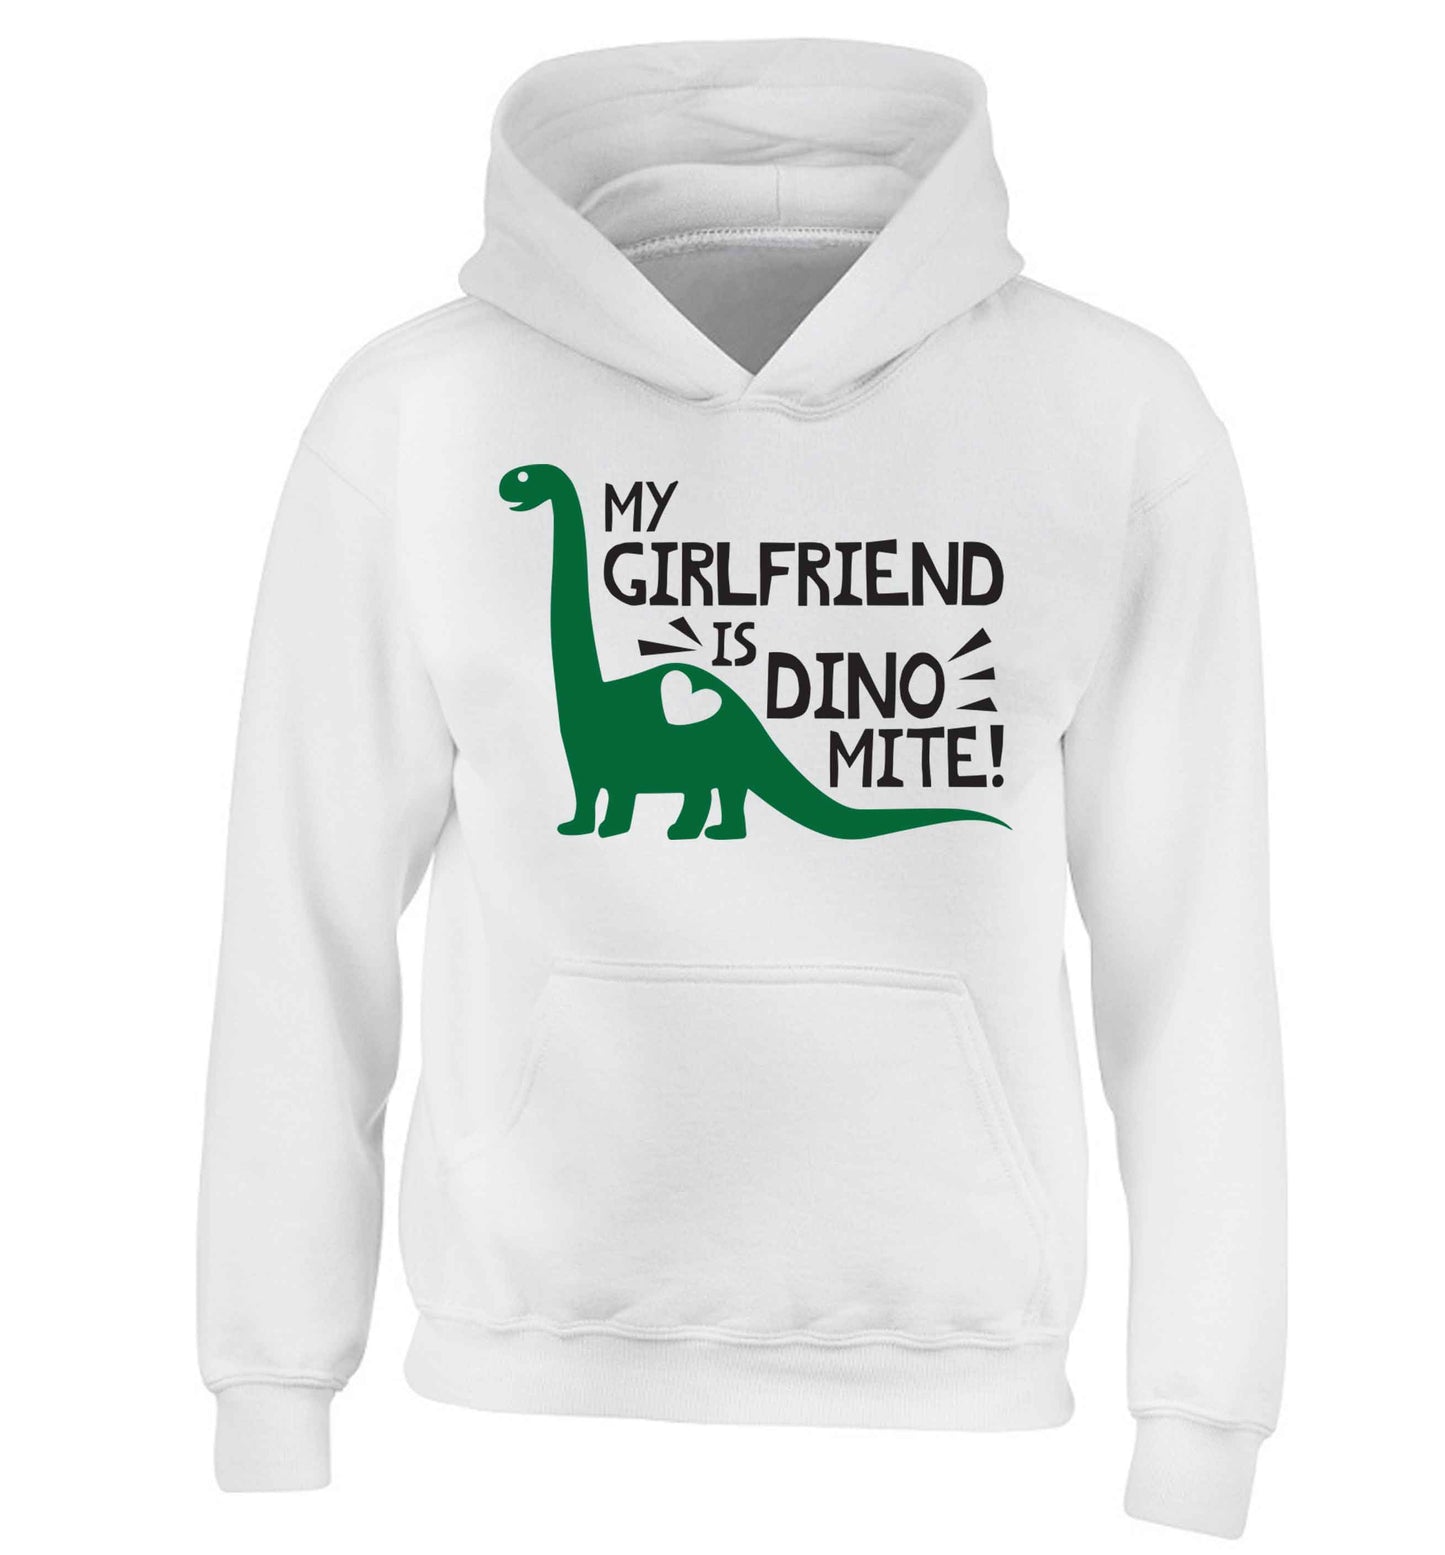 My girlfriend is dinomite! children's white hoodie 12-13 Years